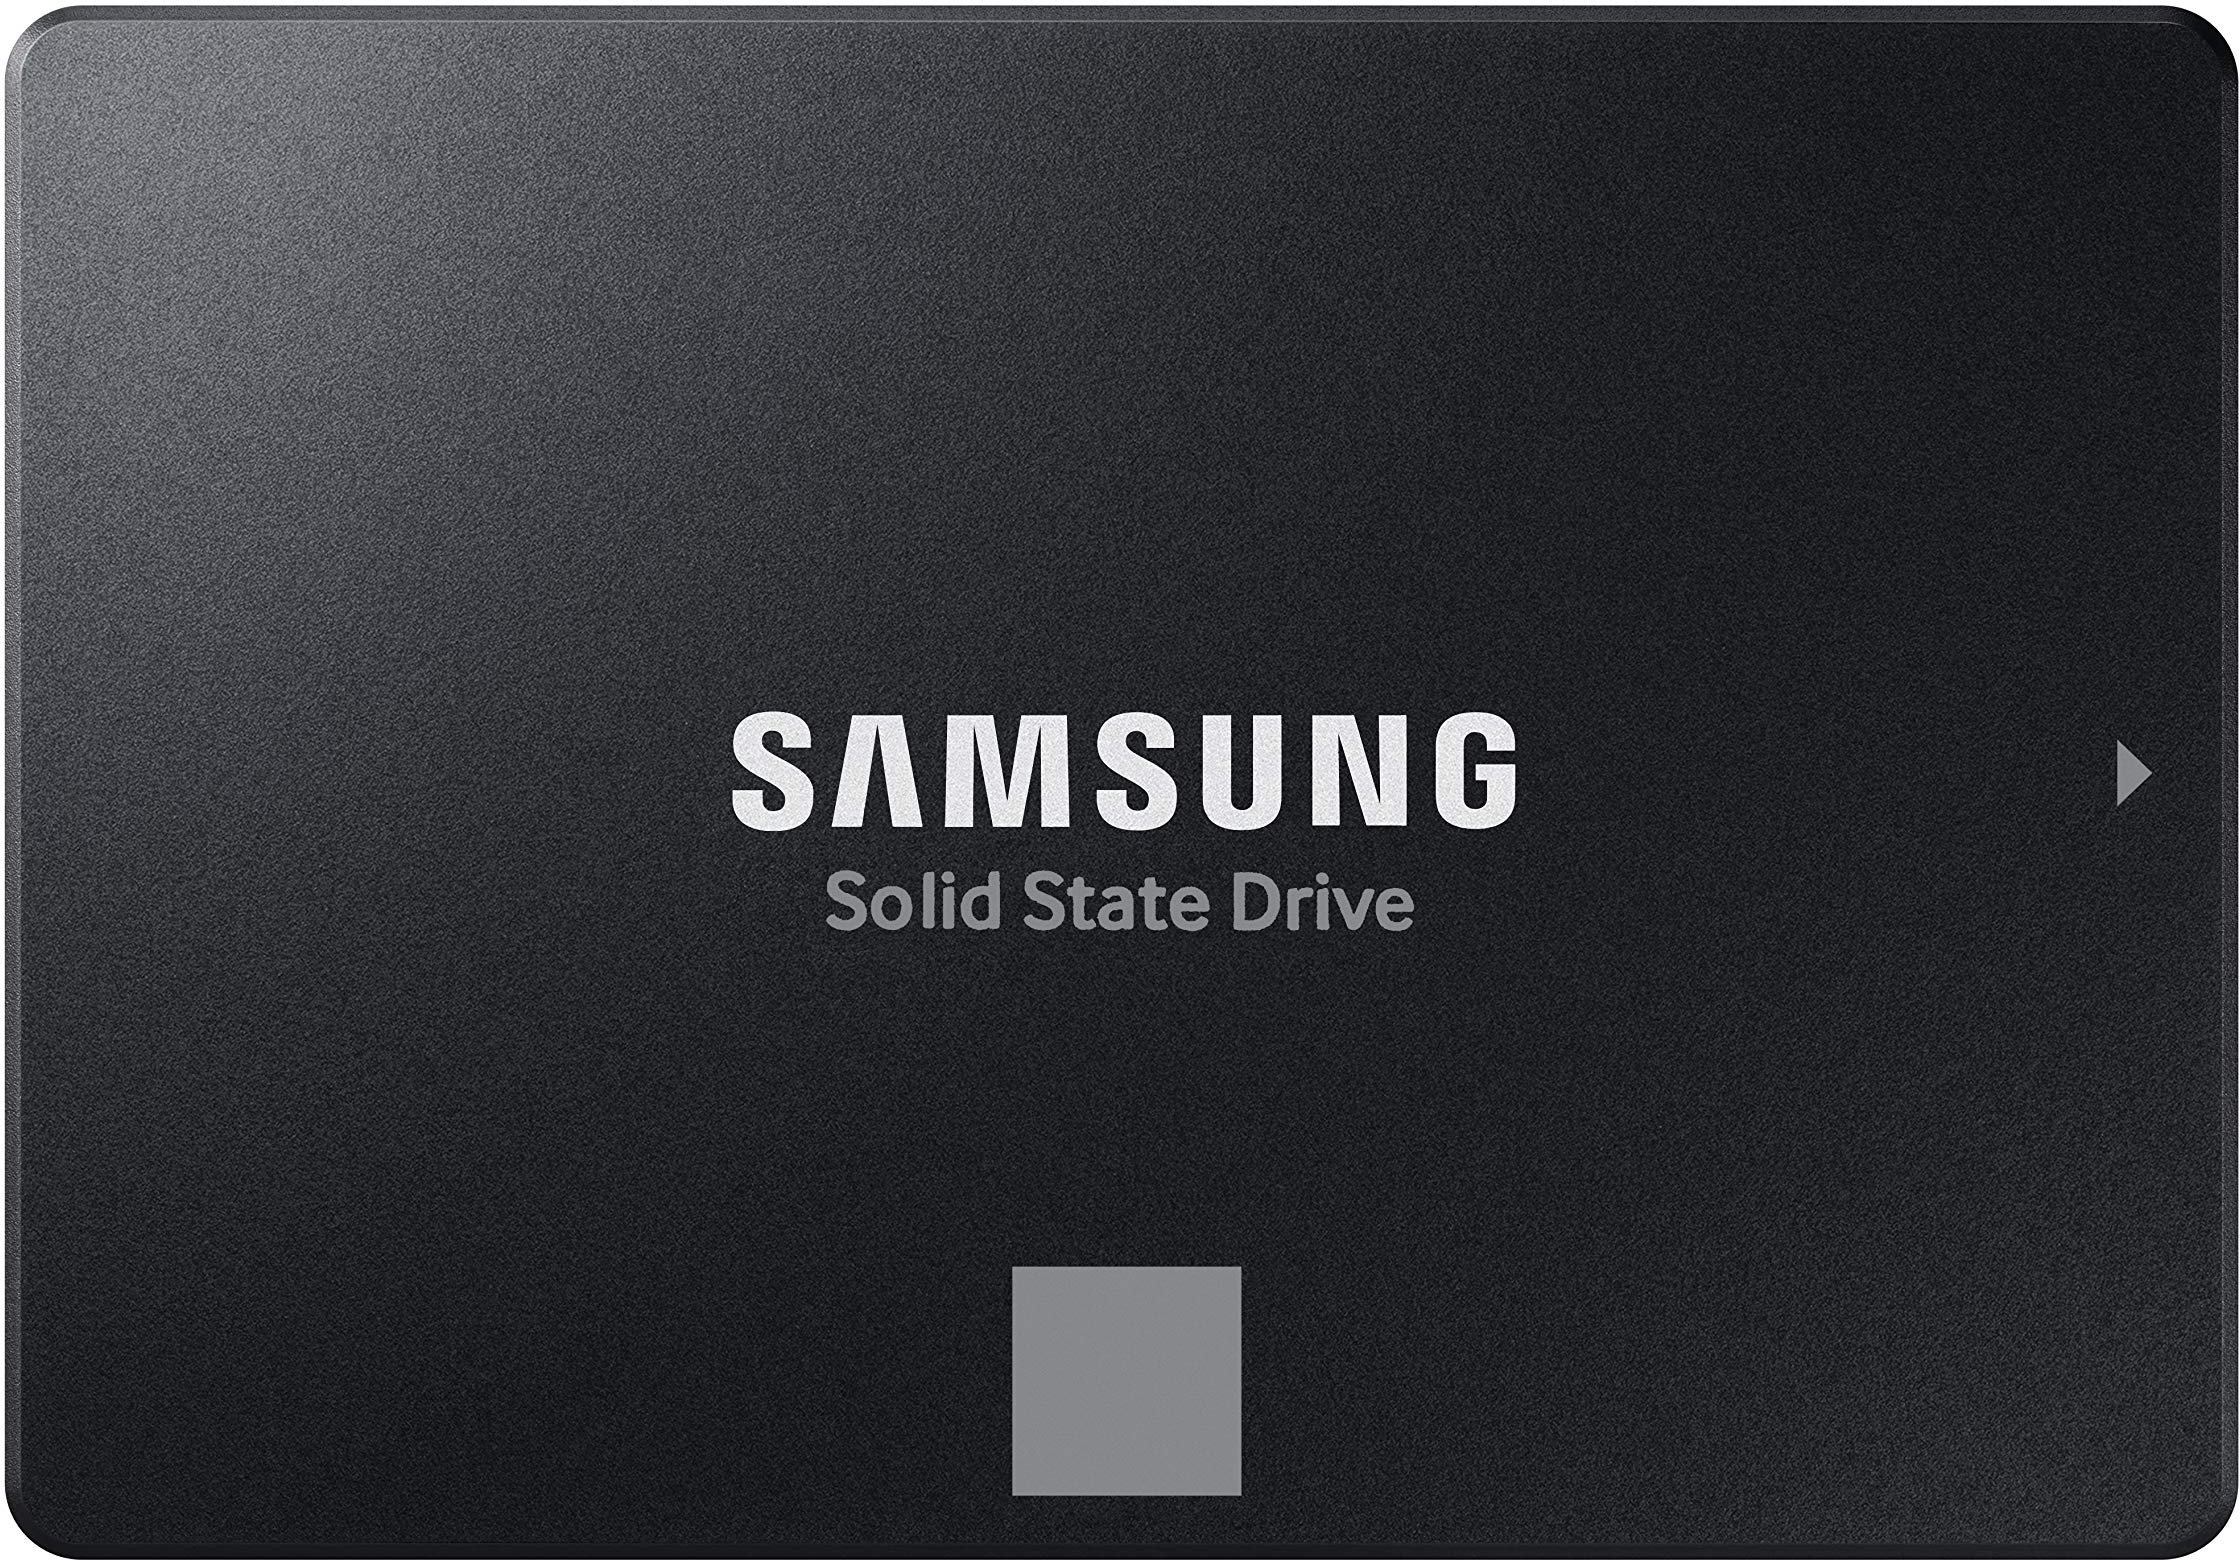 Samsung 870 EVO SATA III 2,5 Zoll SSD, 250 GB, 560 MB/s Lesen, 530 MB/s Schreiben, Interne SSD, Festplatte für schnelle Datenübertragung, MZ-77E250B/EU